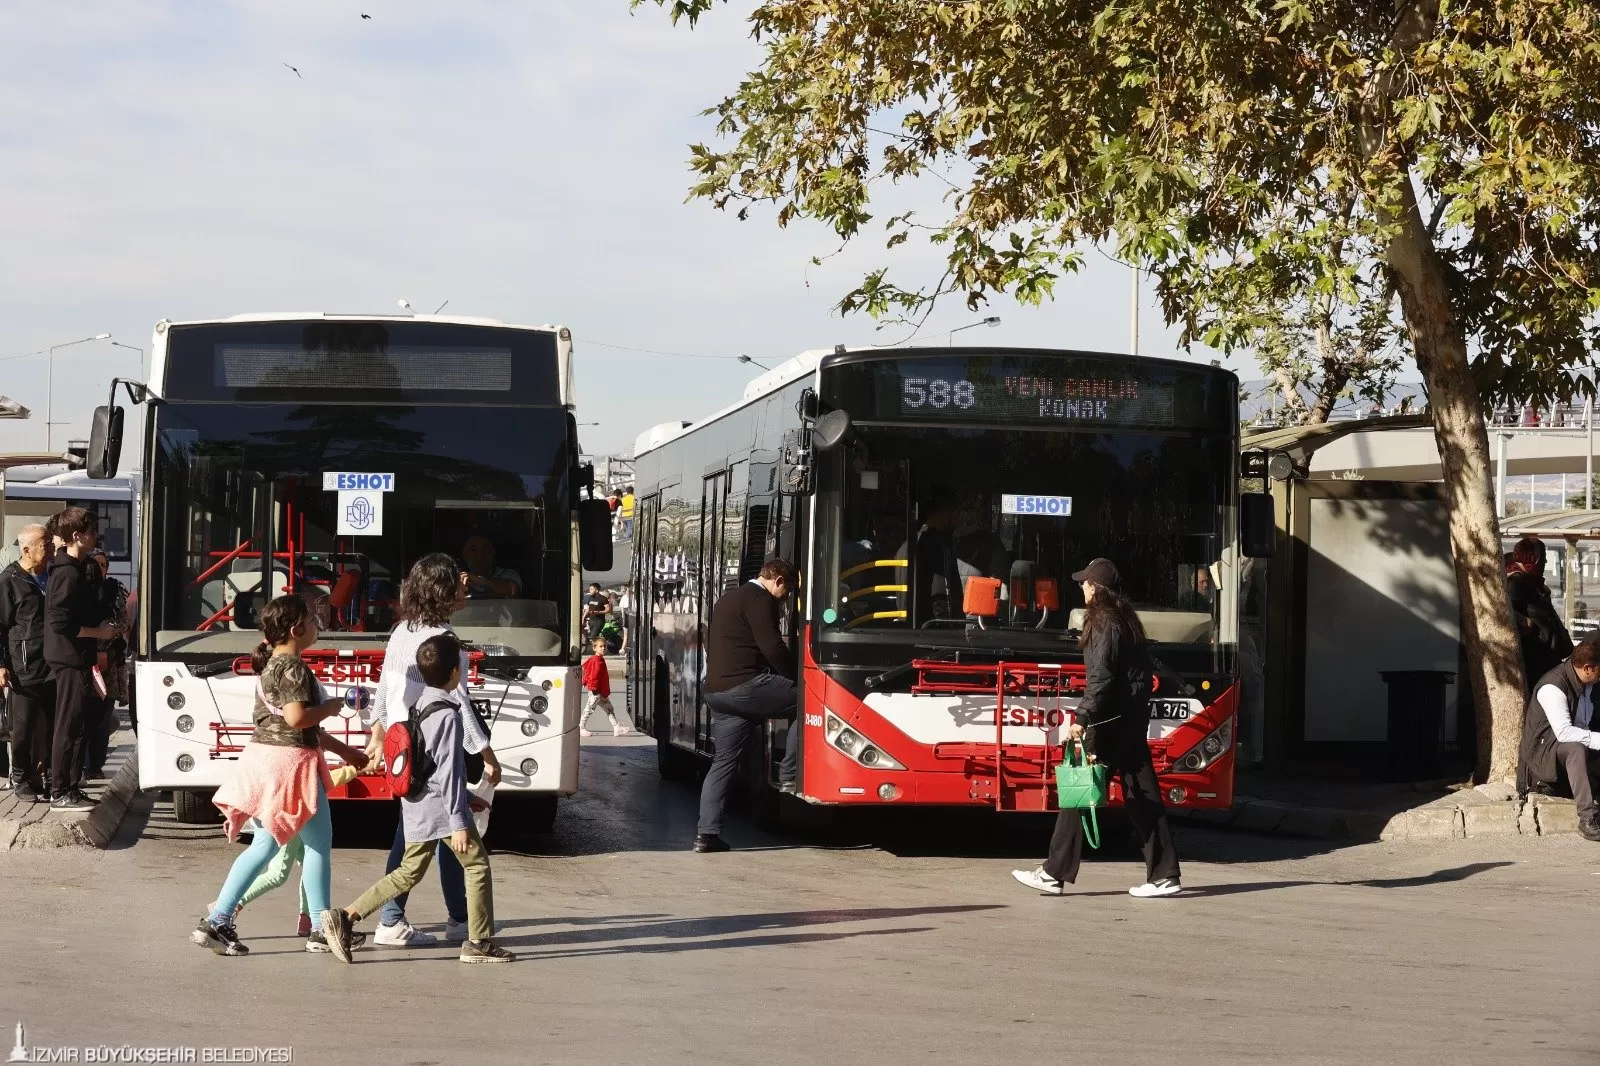 İzmir Büyükşehir Belediyesi, yılbaşı gecesi ve ertesi gün vatandaşların rahat ve güvenli bir şekilde seyahat edebilmesi için toplu ulaşım ve diğer hizmetlerde düzenleme yaptı.